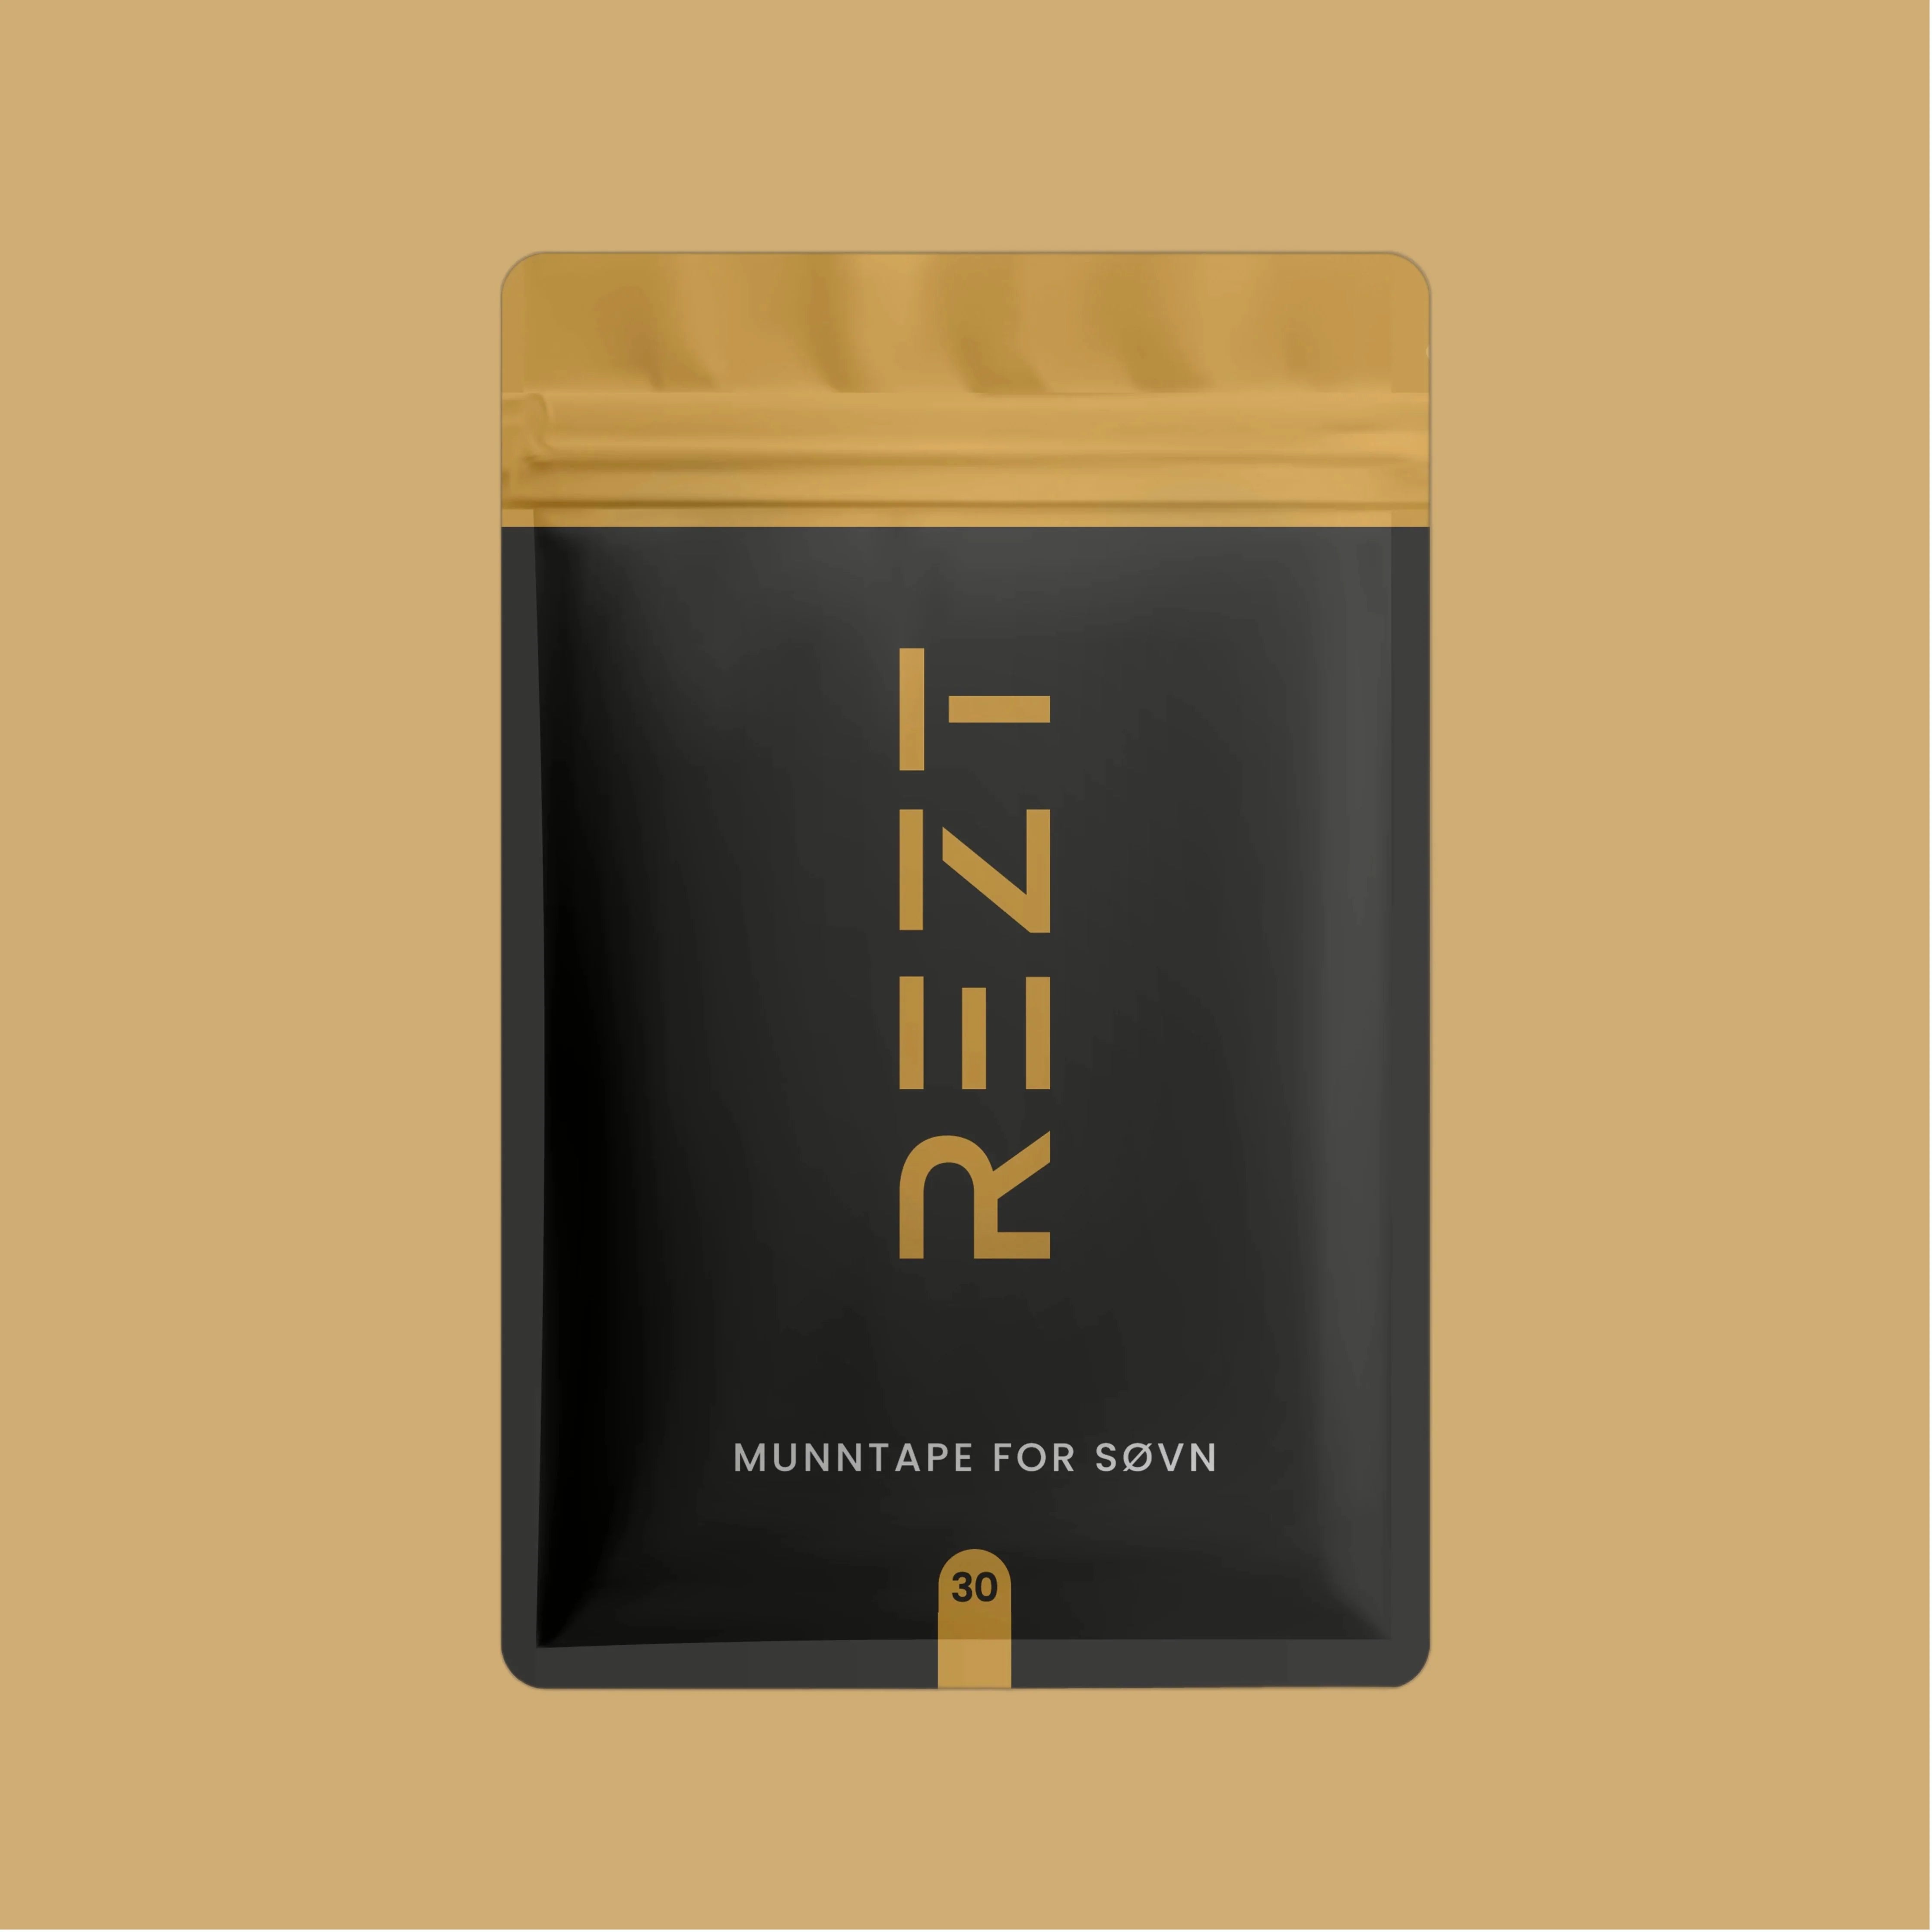 En minimalistisk designet pakning av REZT munntape for søvn. Pakningen er i svart med gullfarget tekst og detaljer, og står mot en ensfarget varm beige bakgrunn. Teksten angir at det er 30 stykker i pakningen.